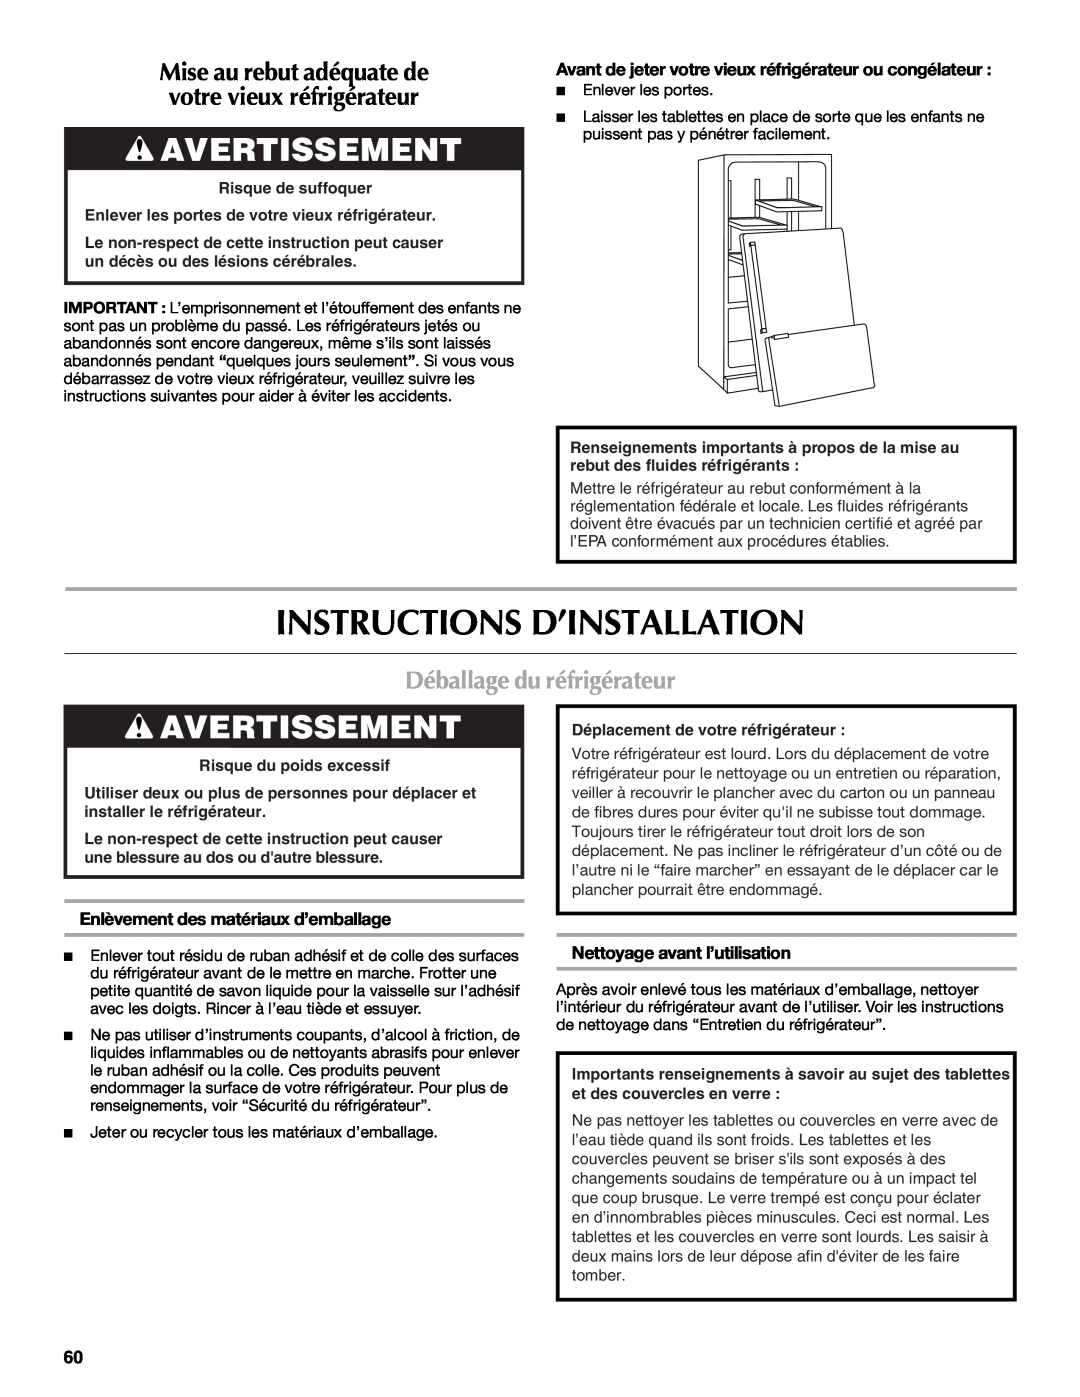 Maytag W10400978A Instructions D’Installation, Avertissement, Déballage du réfrigérateur, Nettoyage avant l’utilisation 